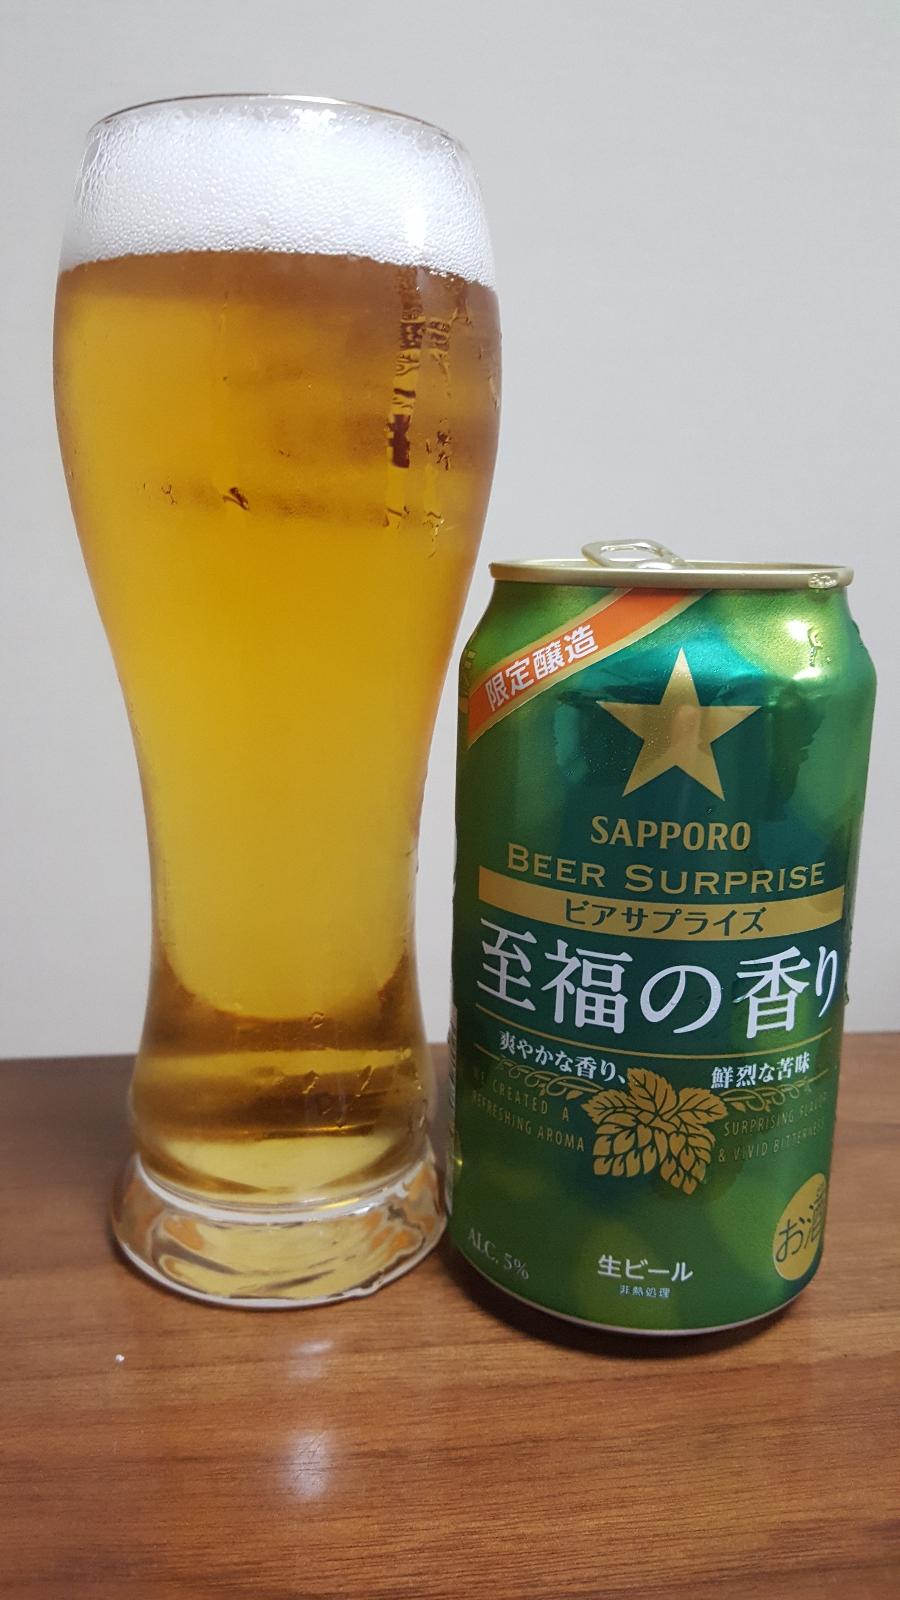 Beer Surprise: Shifuku no Kaori (2020)